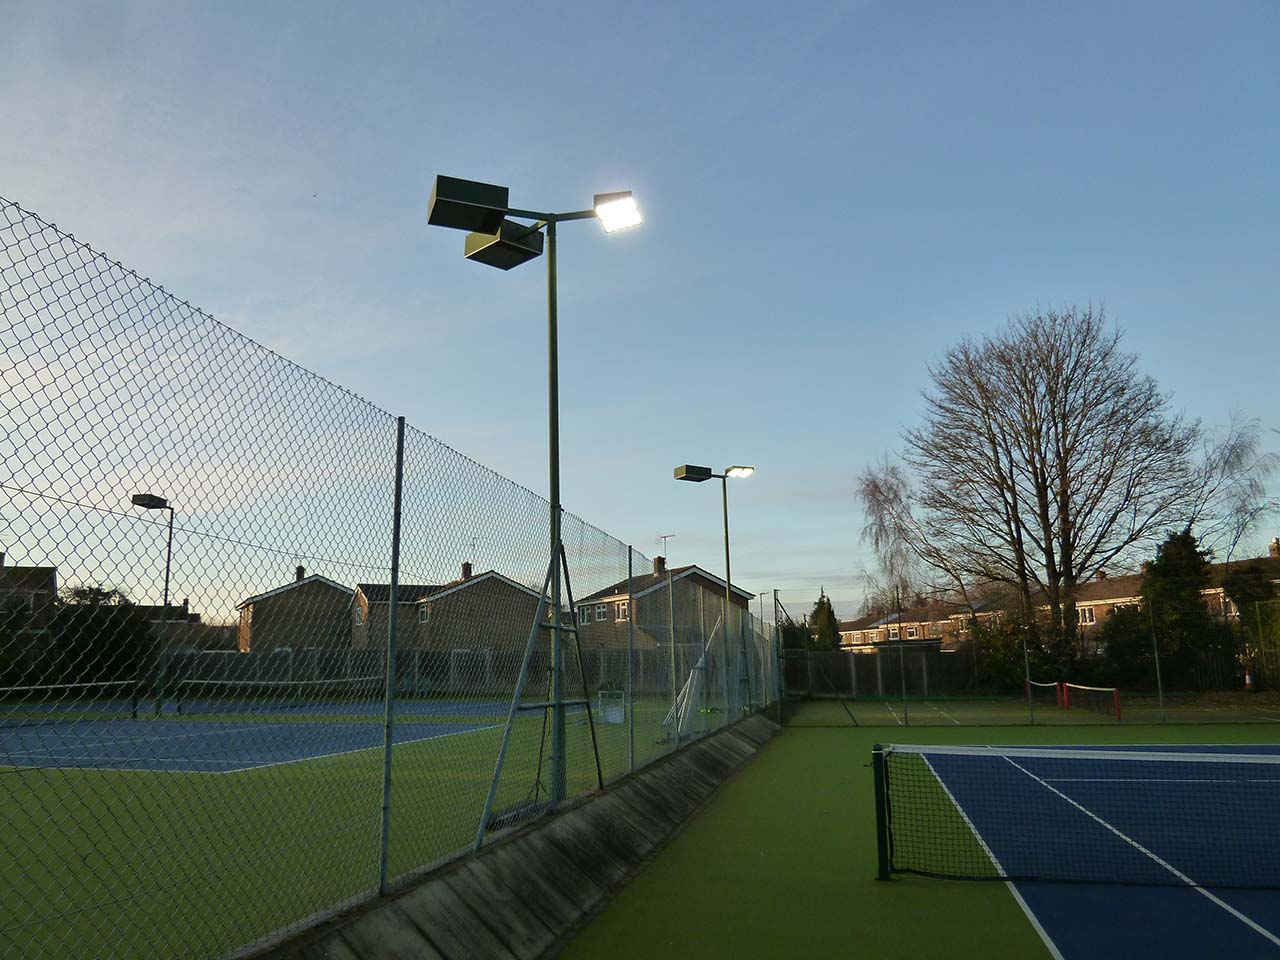 Dunstable Tennis Club